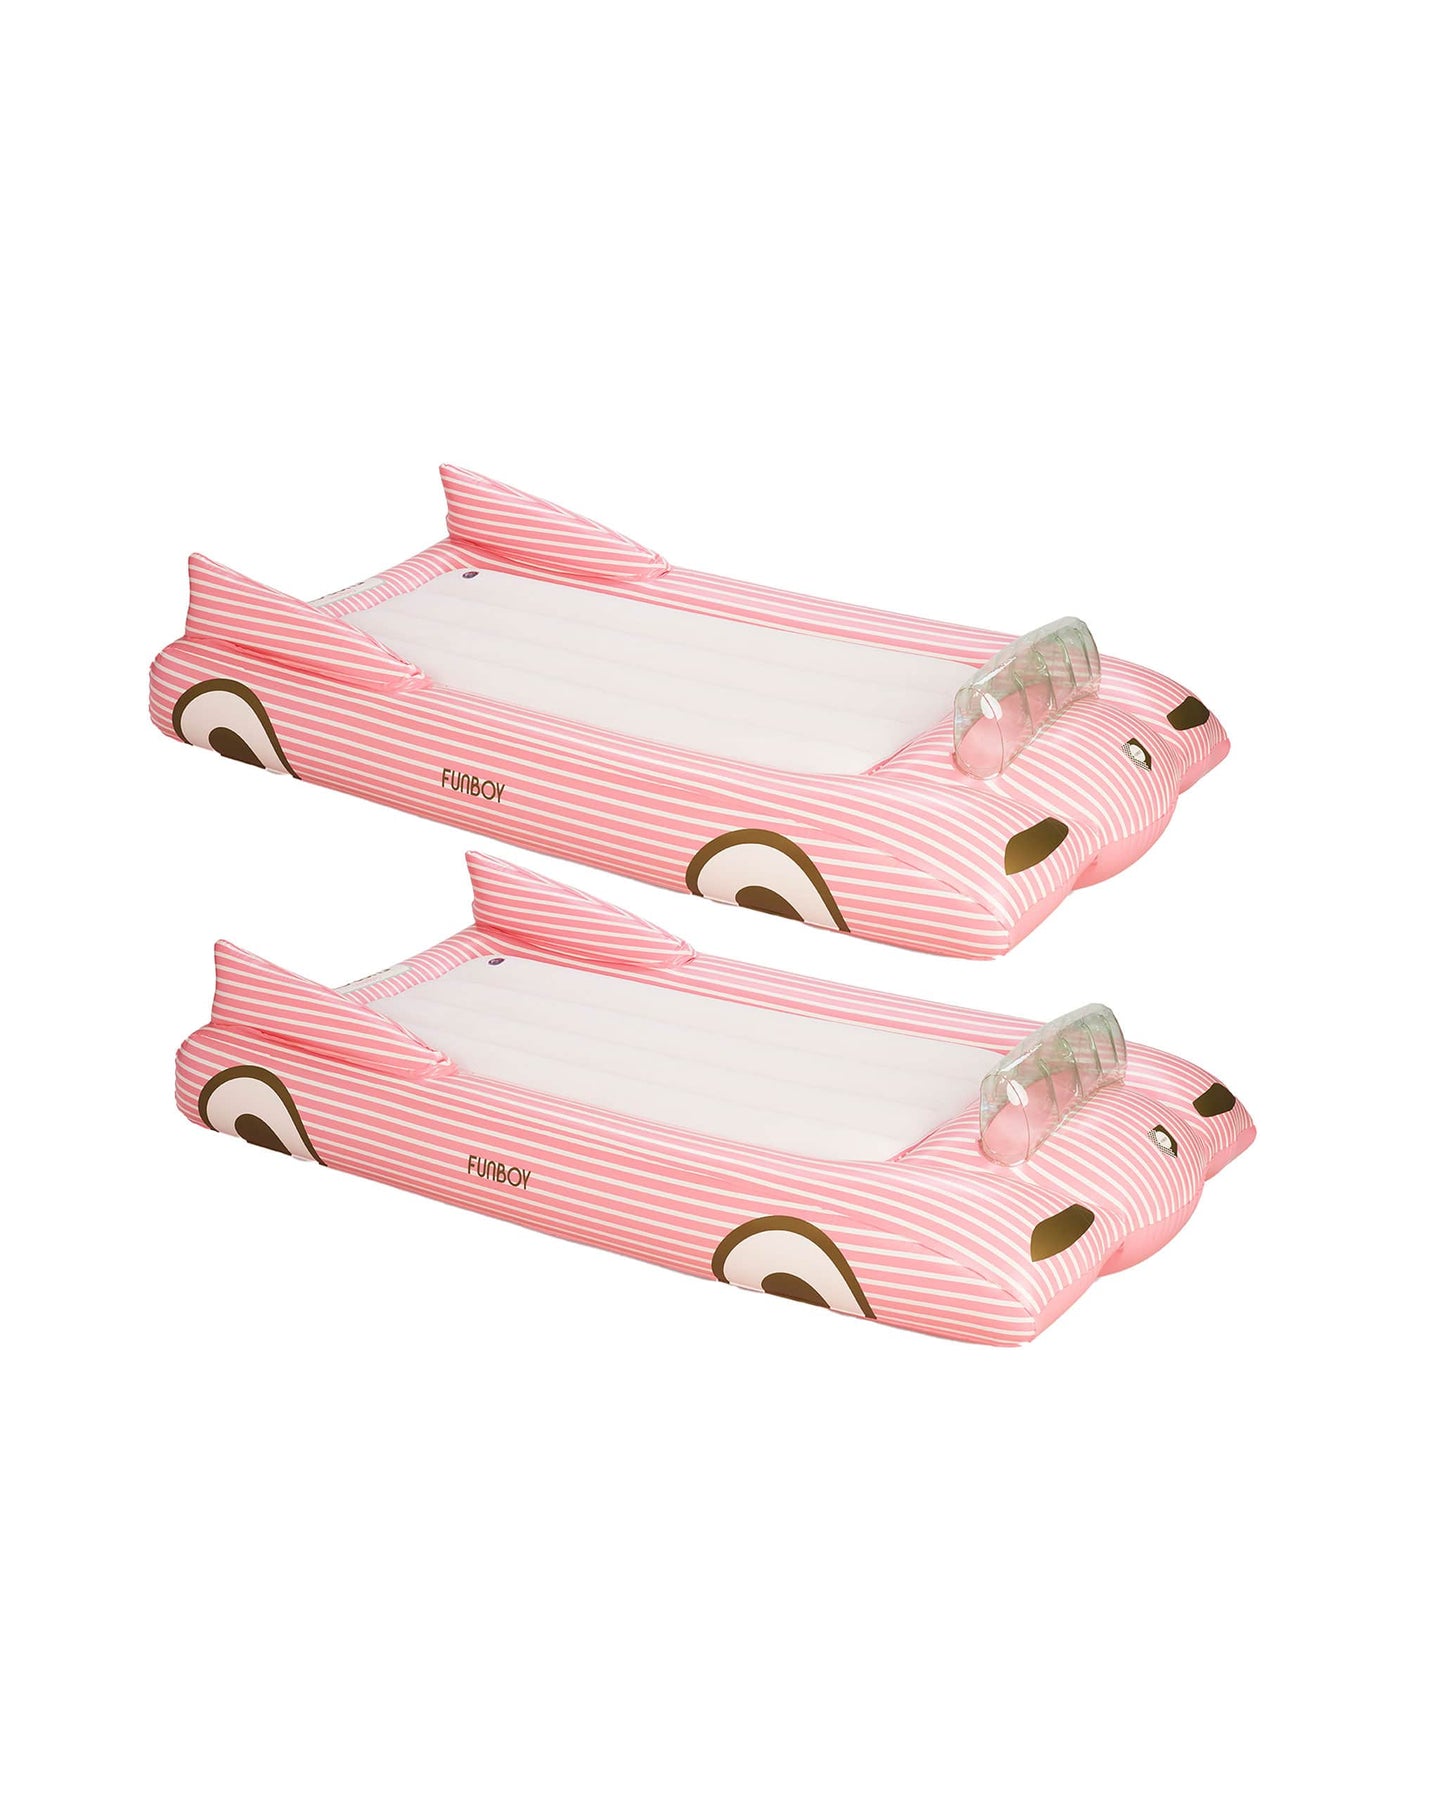 Pink Convertible Kids Air Mattress - 2 Pack